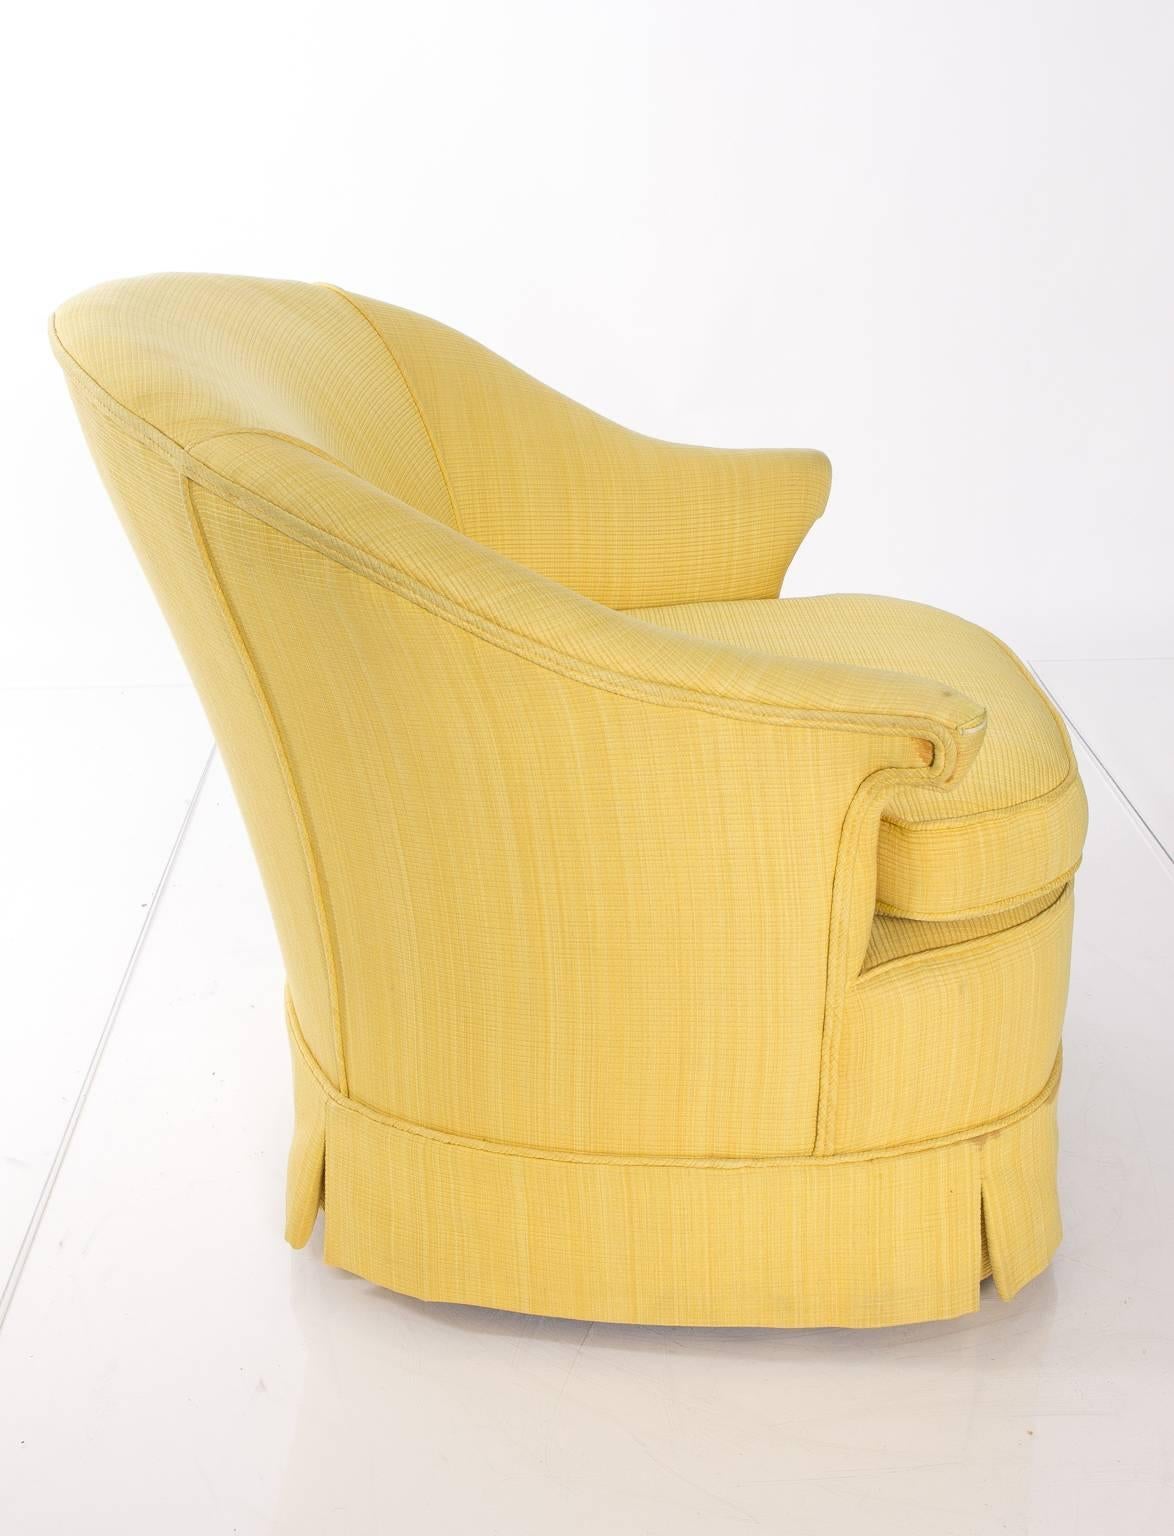 Pair of Yellow Slipper Chairs 1